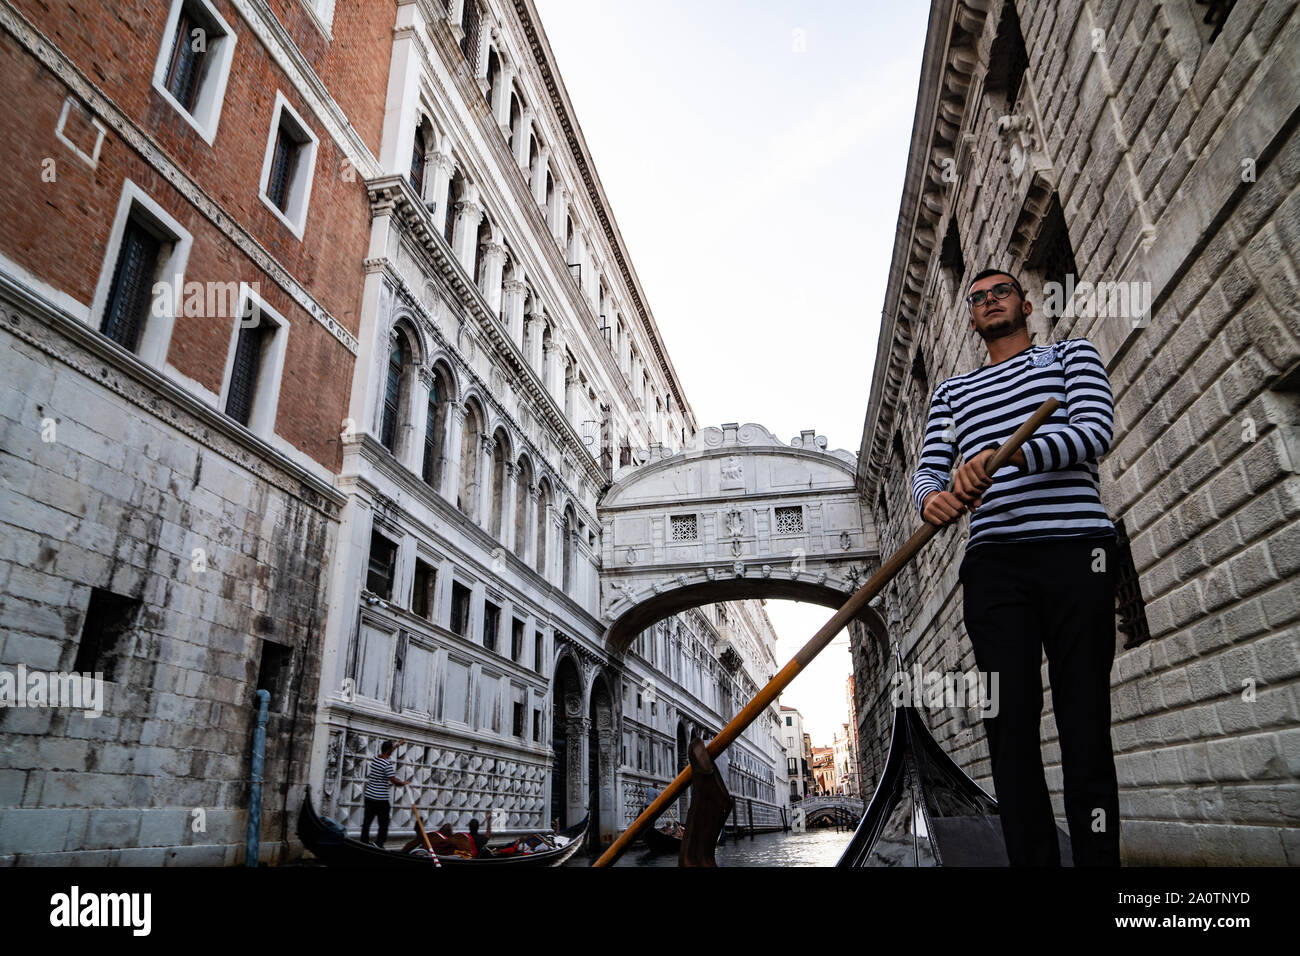 Gondolier sur une gondole sous le pont des soupirs (Ponte dei Sospiri), sur le rio di Palazzo, Venise, Italie Banque D'Images